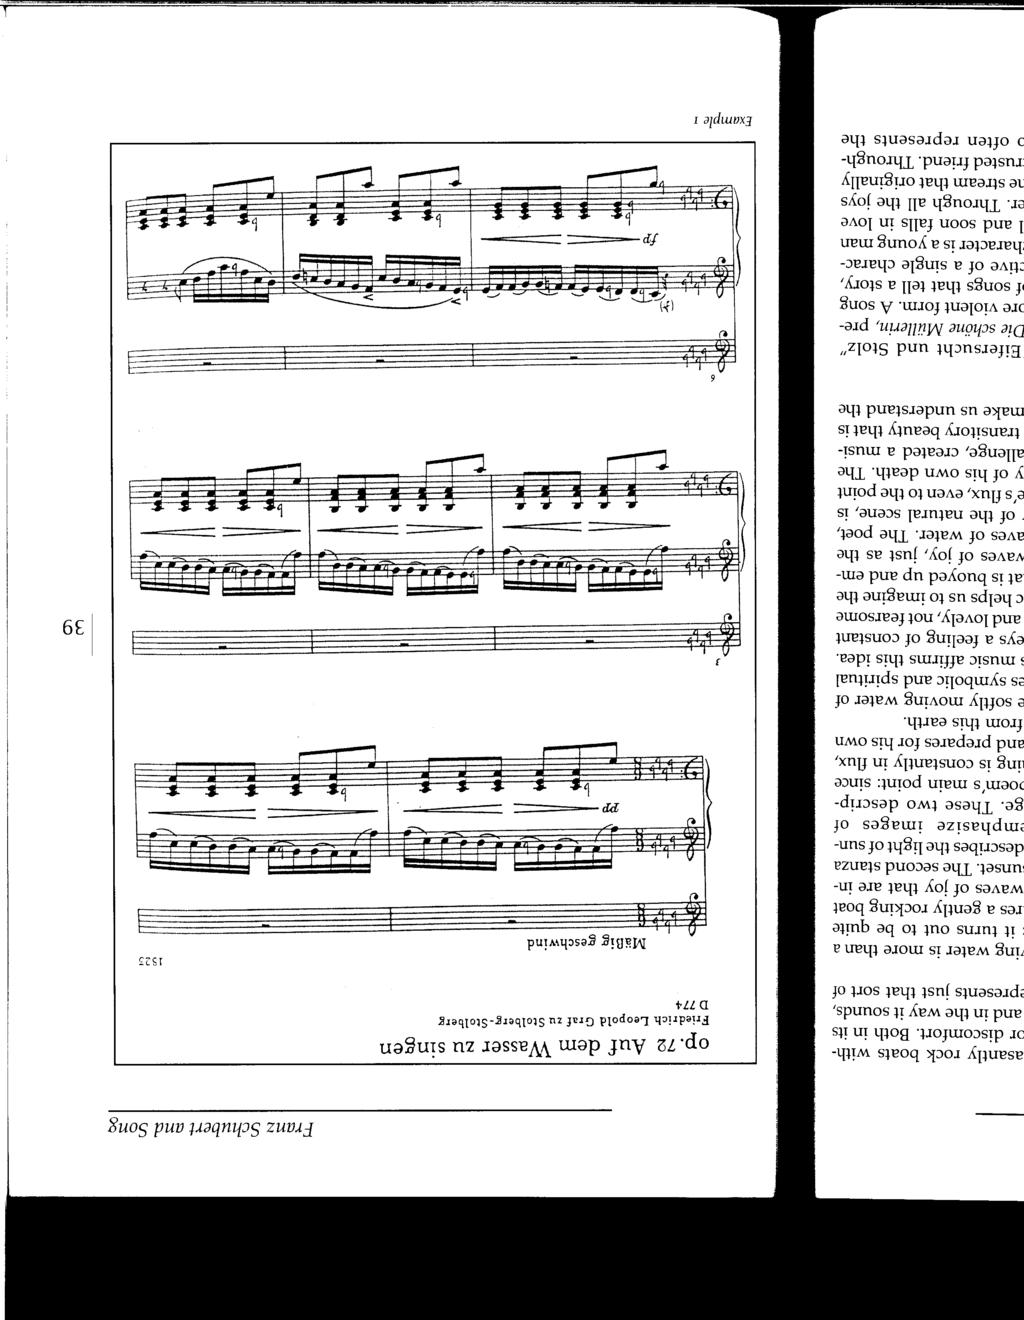 Franz Schubert and Song op. 72 Auf dem Wasser zu singen Friedrich Leopold Graf zu StolbergStolberg D774 MaBig geschwind 1523 j t b. 'PP====.. &:....J """.. 1.........1., v t),..?.,._!